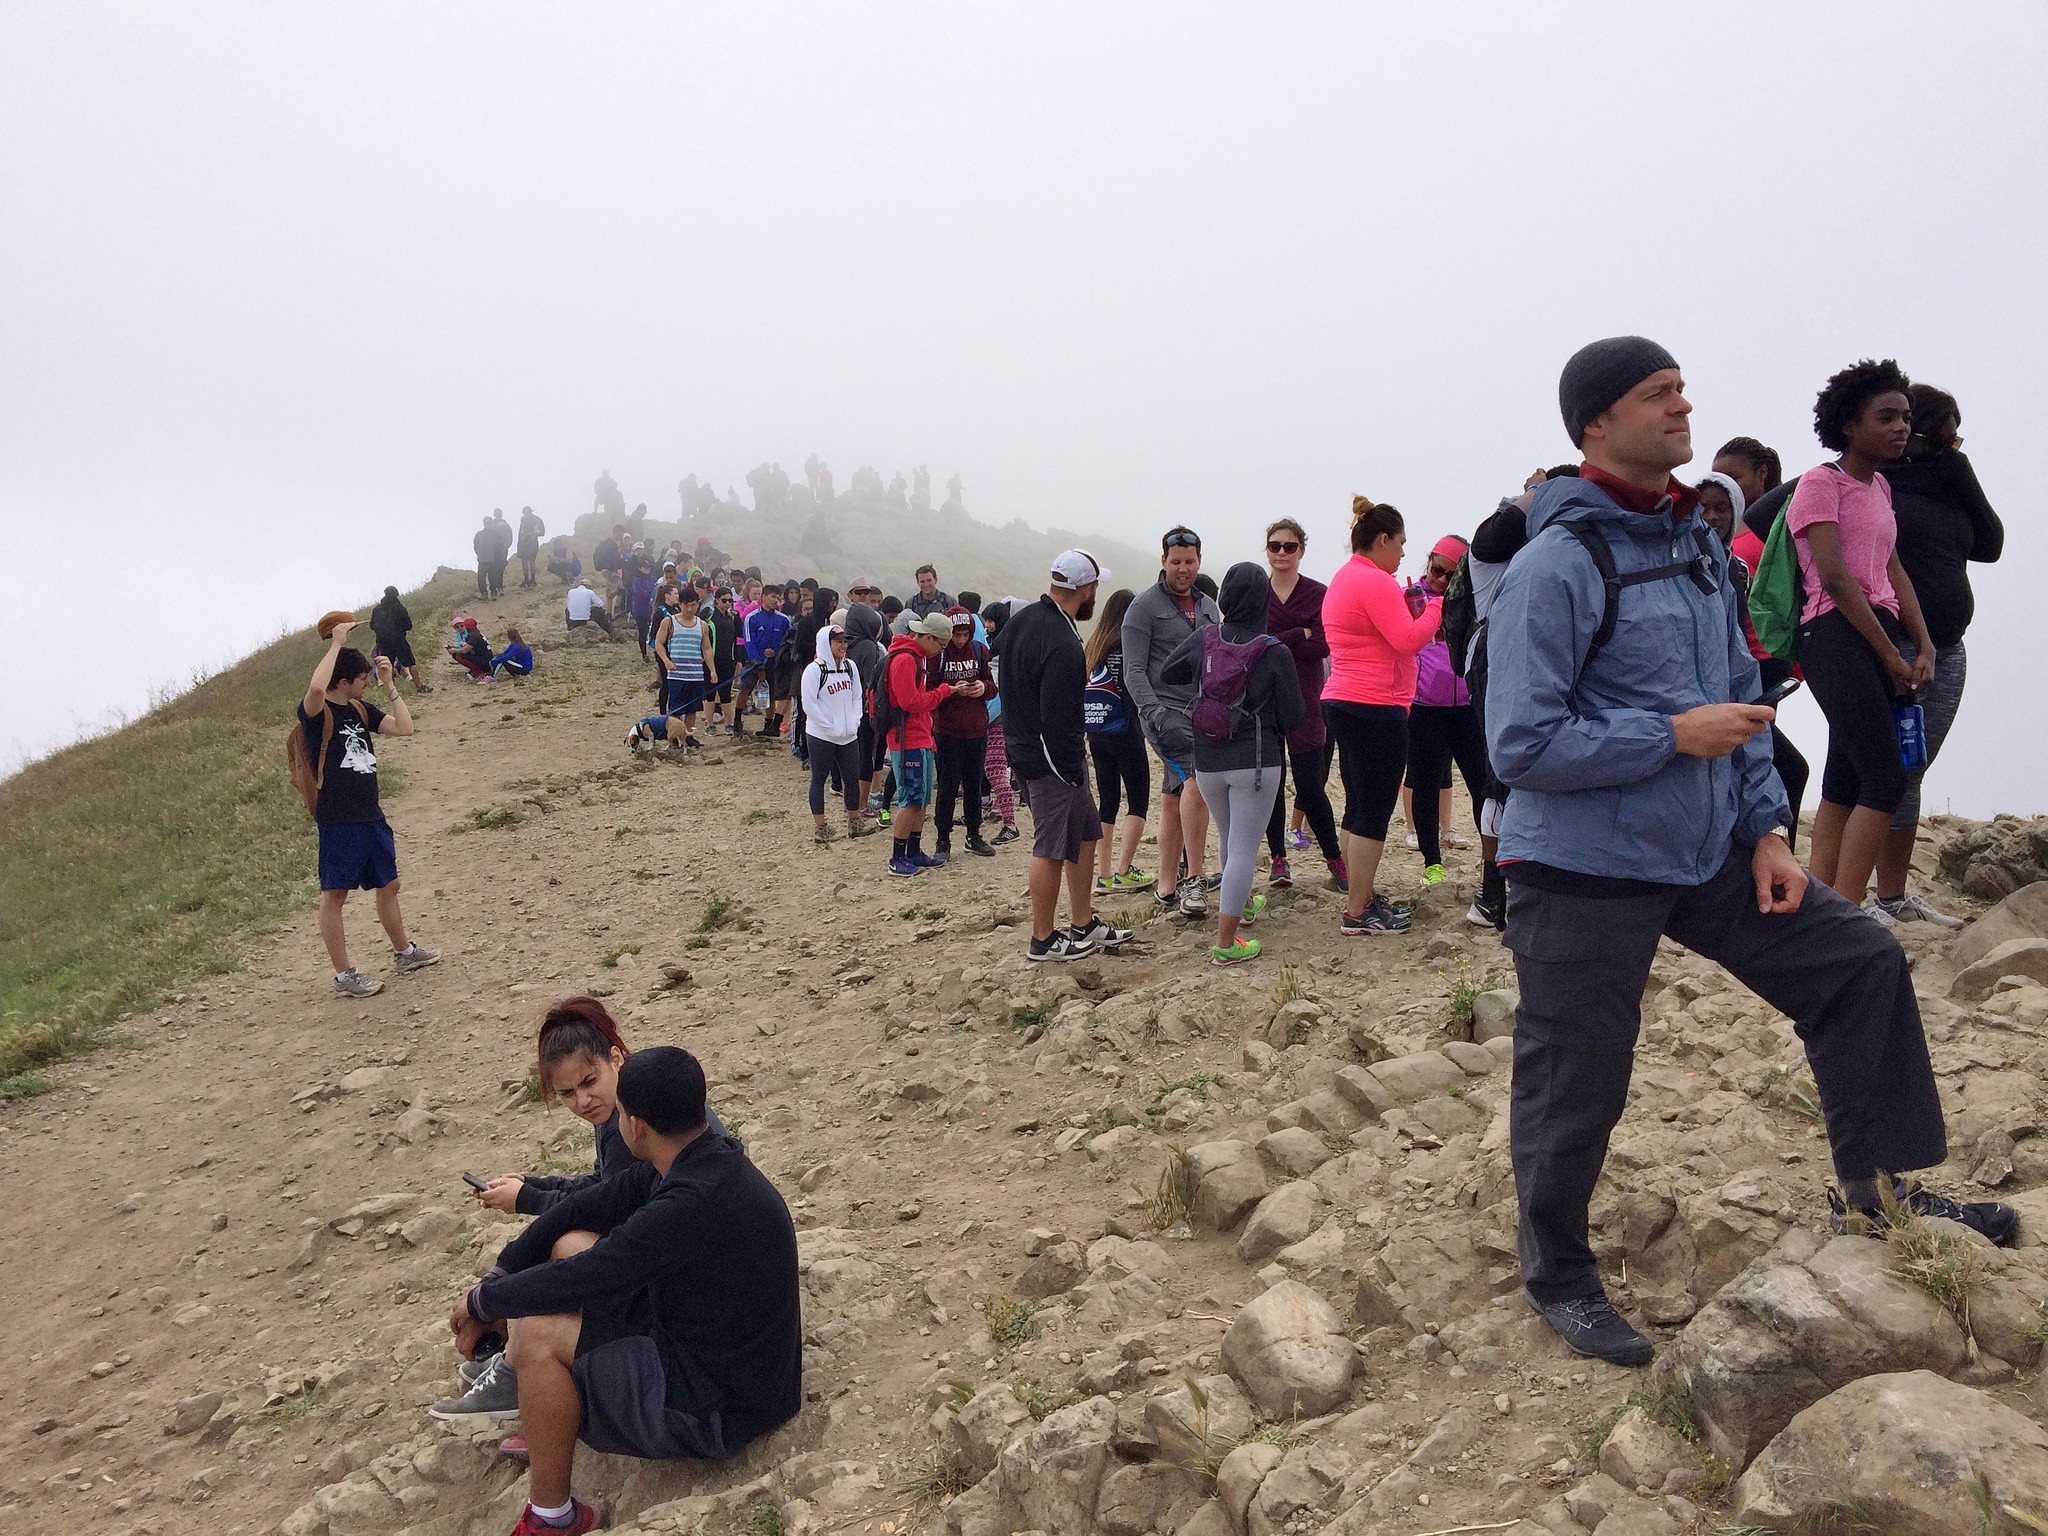 Popular Fremont Hiking Spot for Selfies Prompts Parking Lot on Sacred Land, East Bay Express